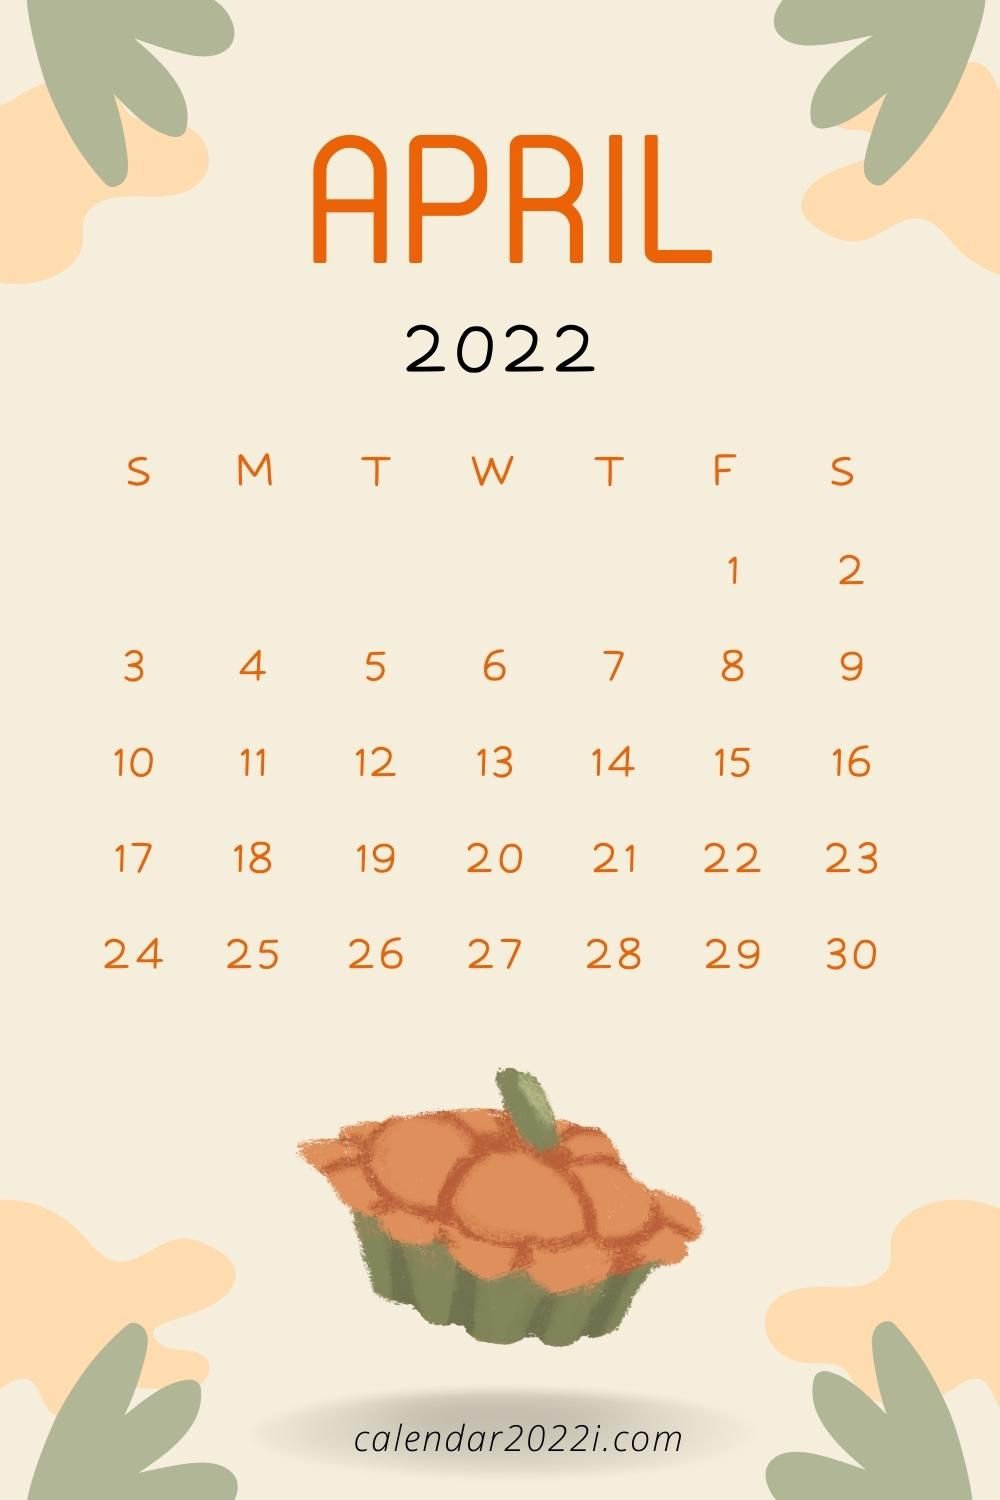 iPhone April 2022 calendar wallpaper in beautiful designs are available here. Calendar wallpaper, Calendar, printable